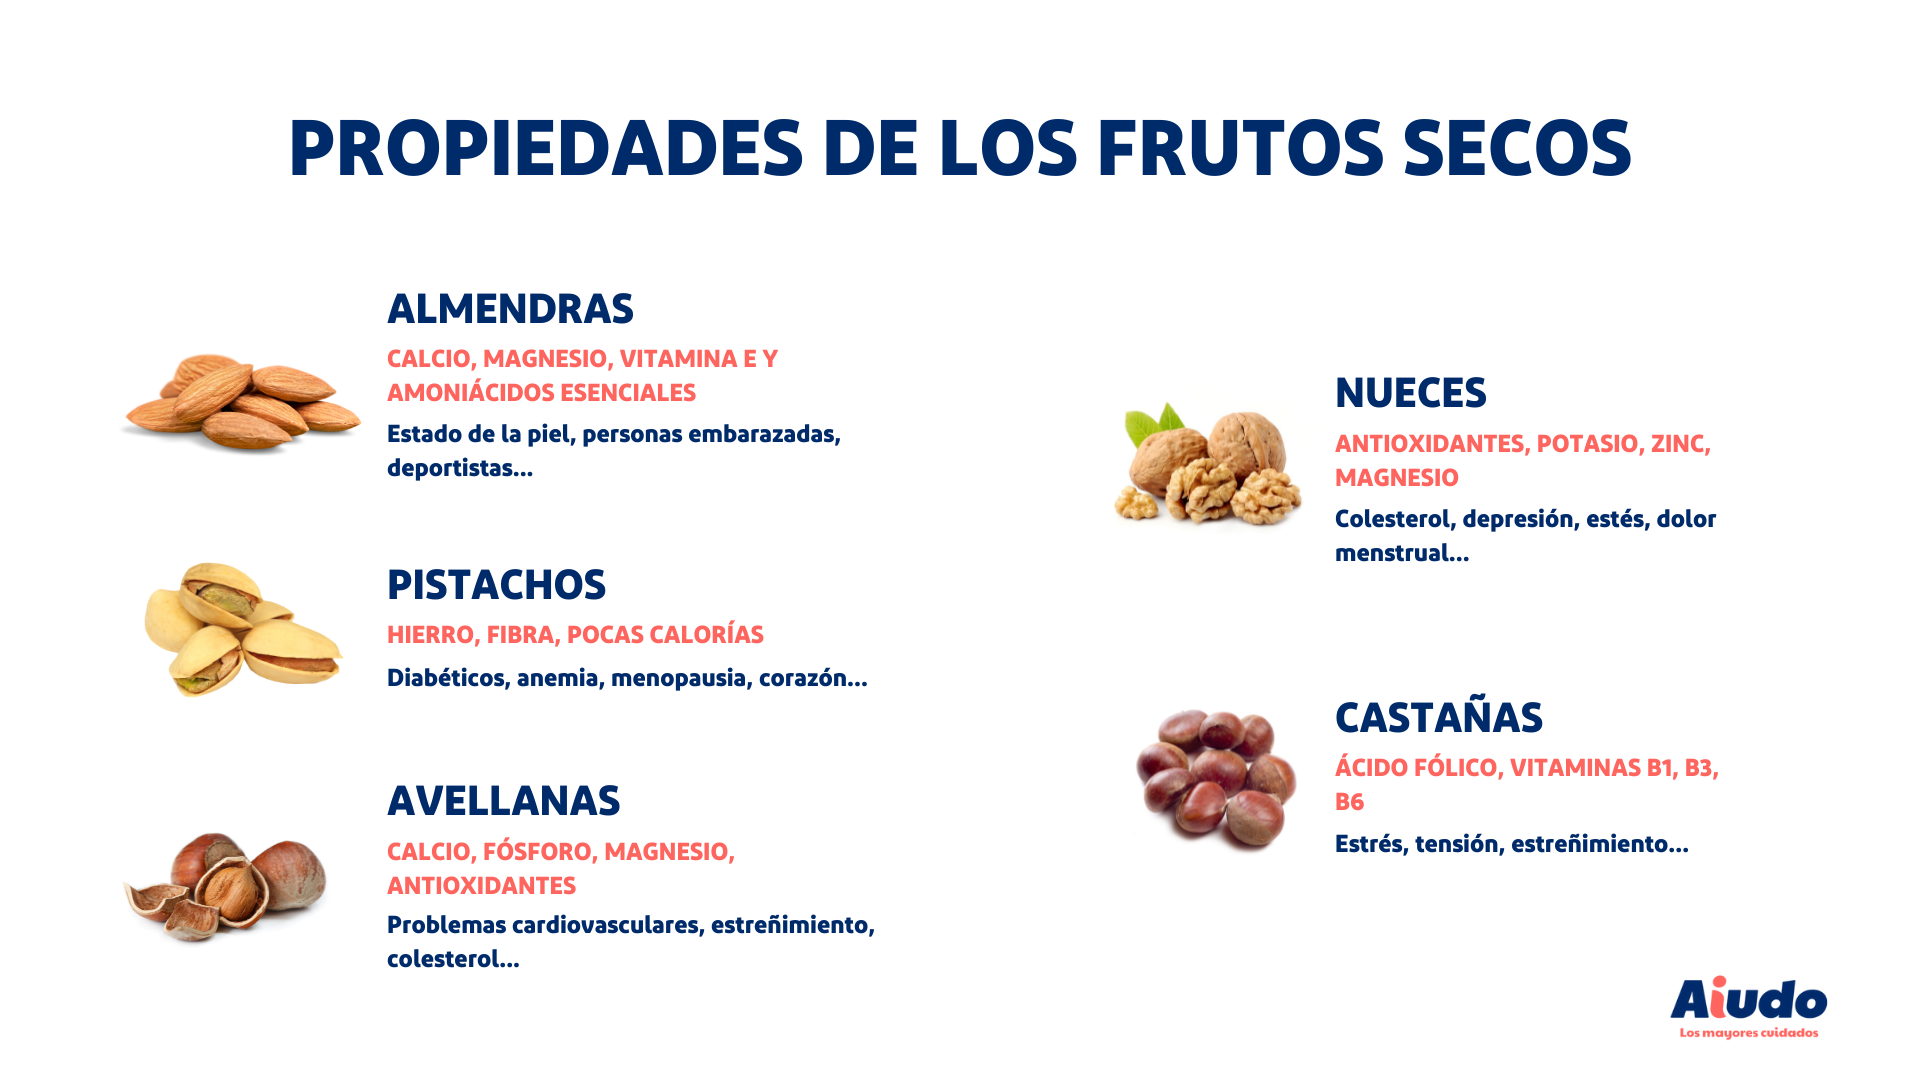 Las propiedades de los frutos secos como las almendras, pistachos, avellanas, nueces o castañas